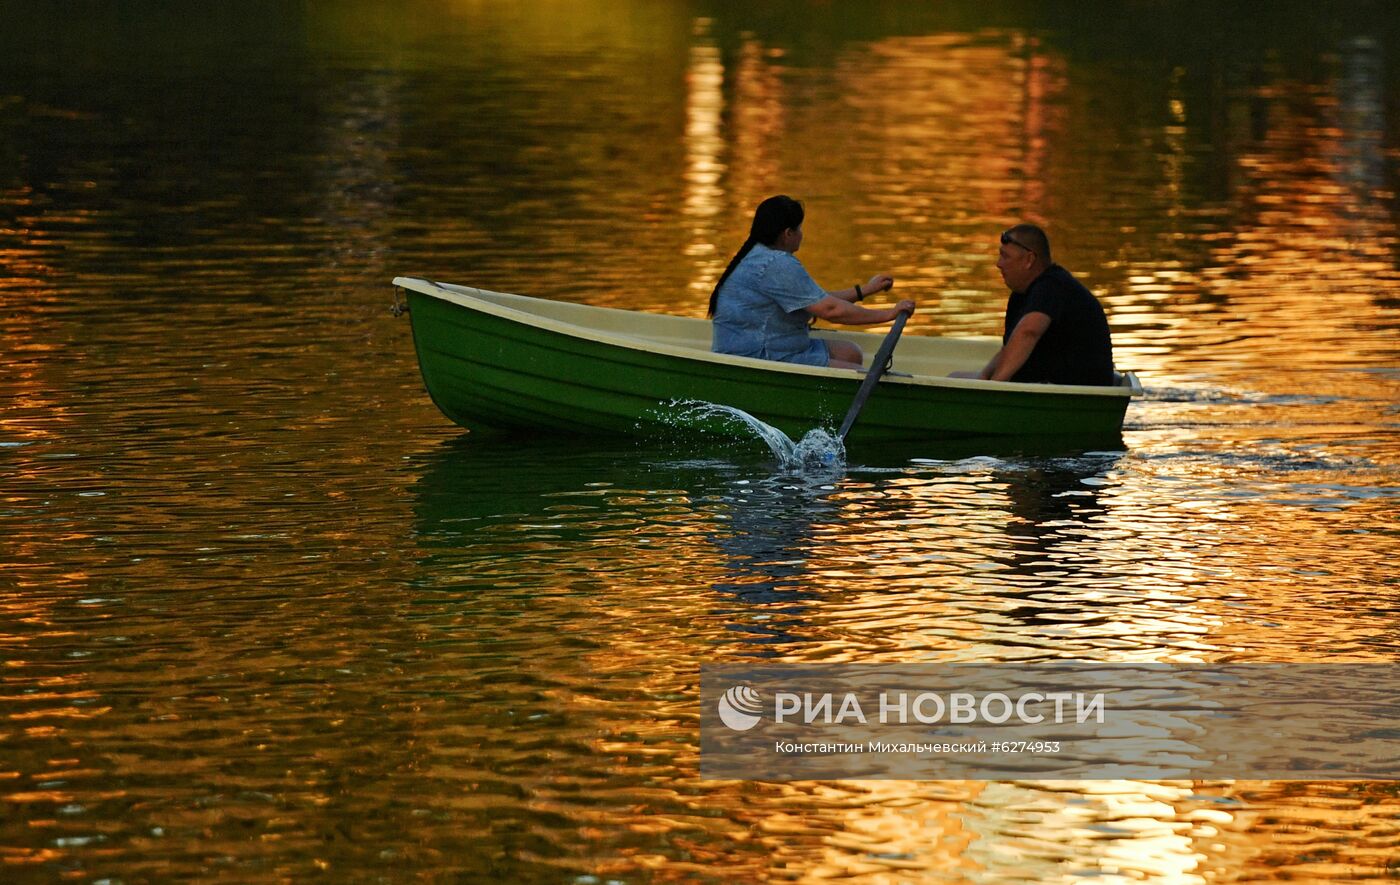 Отдыхающие в Гагаринском парке в Крыму